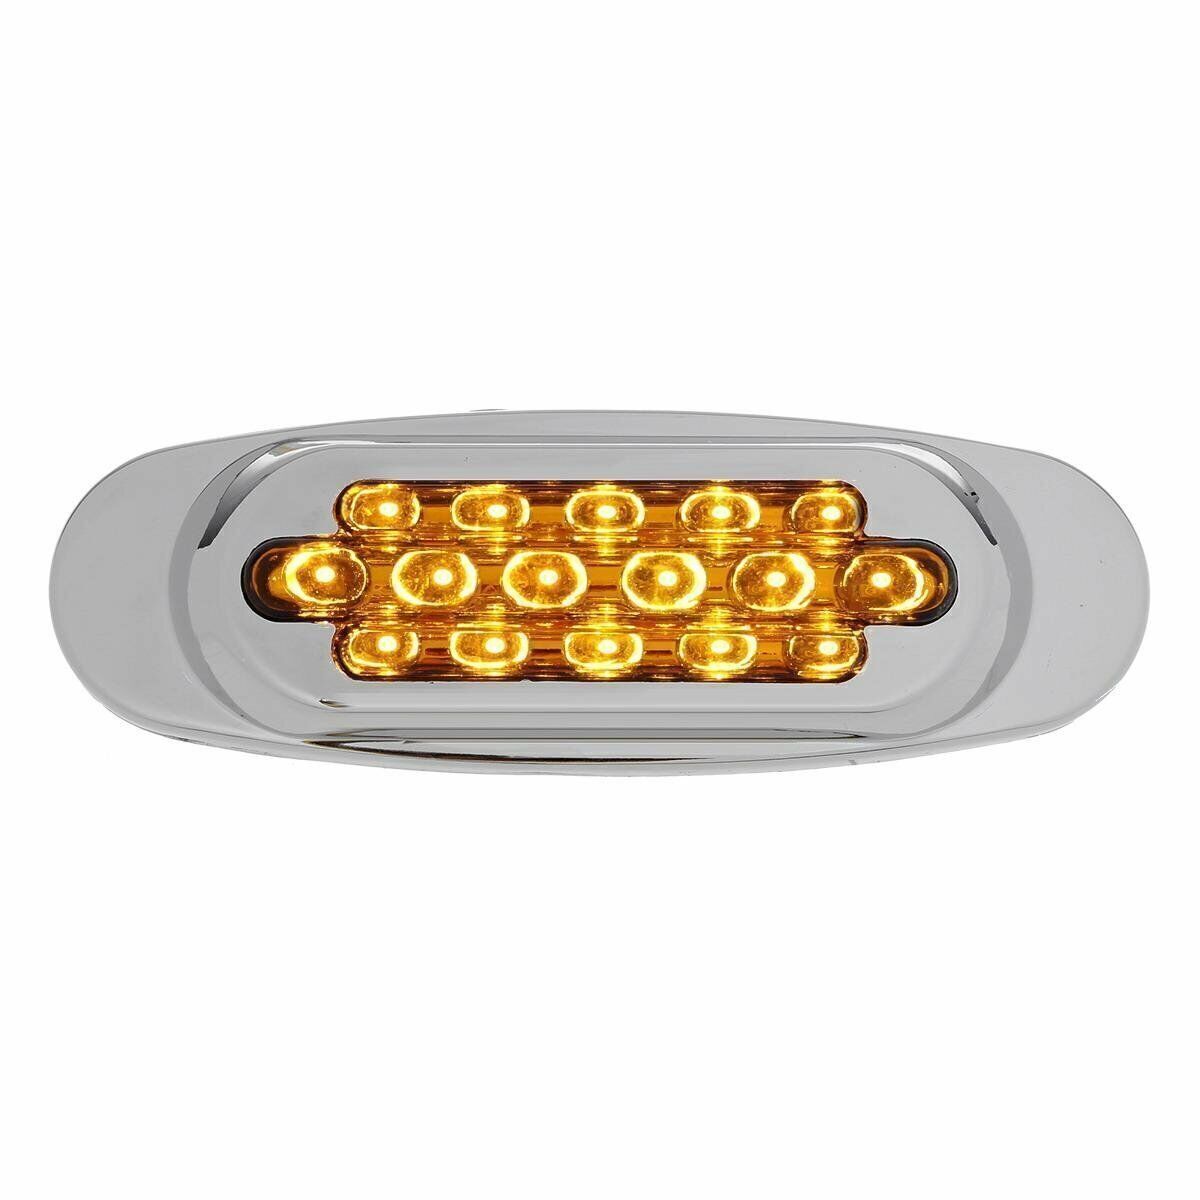 10-50pcs Oval Side Marker Light 16-LED Amber Chrome Bezel For Freightliner Truck